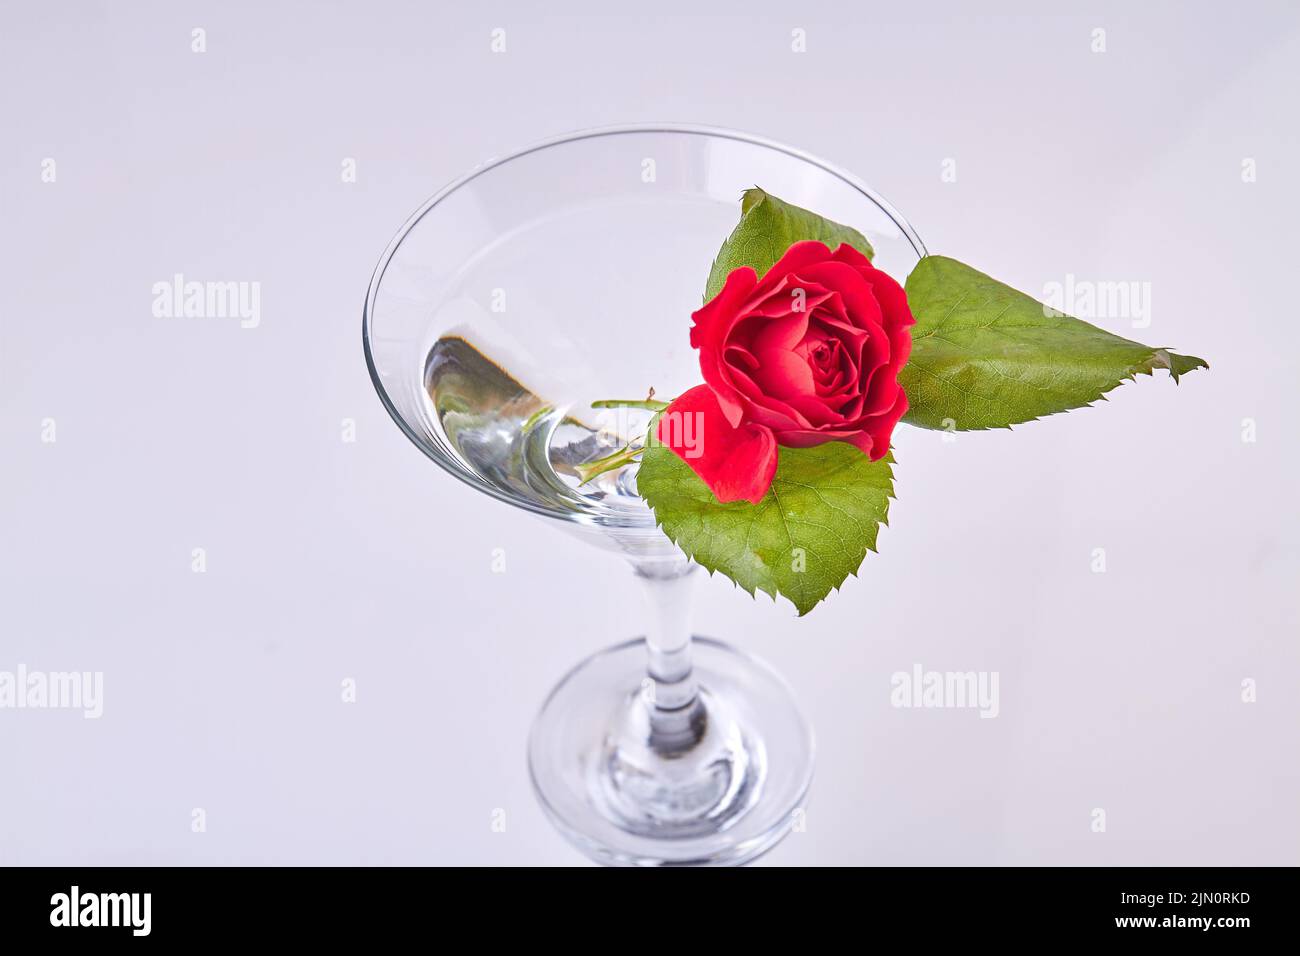 Copa de copa de cóctel con flor de rosa y hojas. Composición romántica del día de San Valentín. Foto de stock